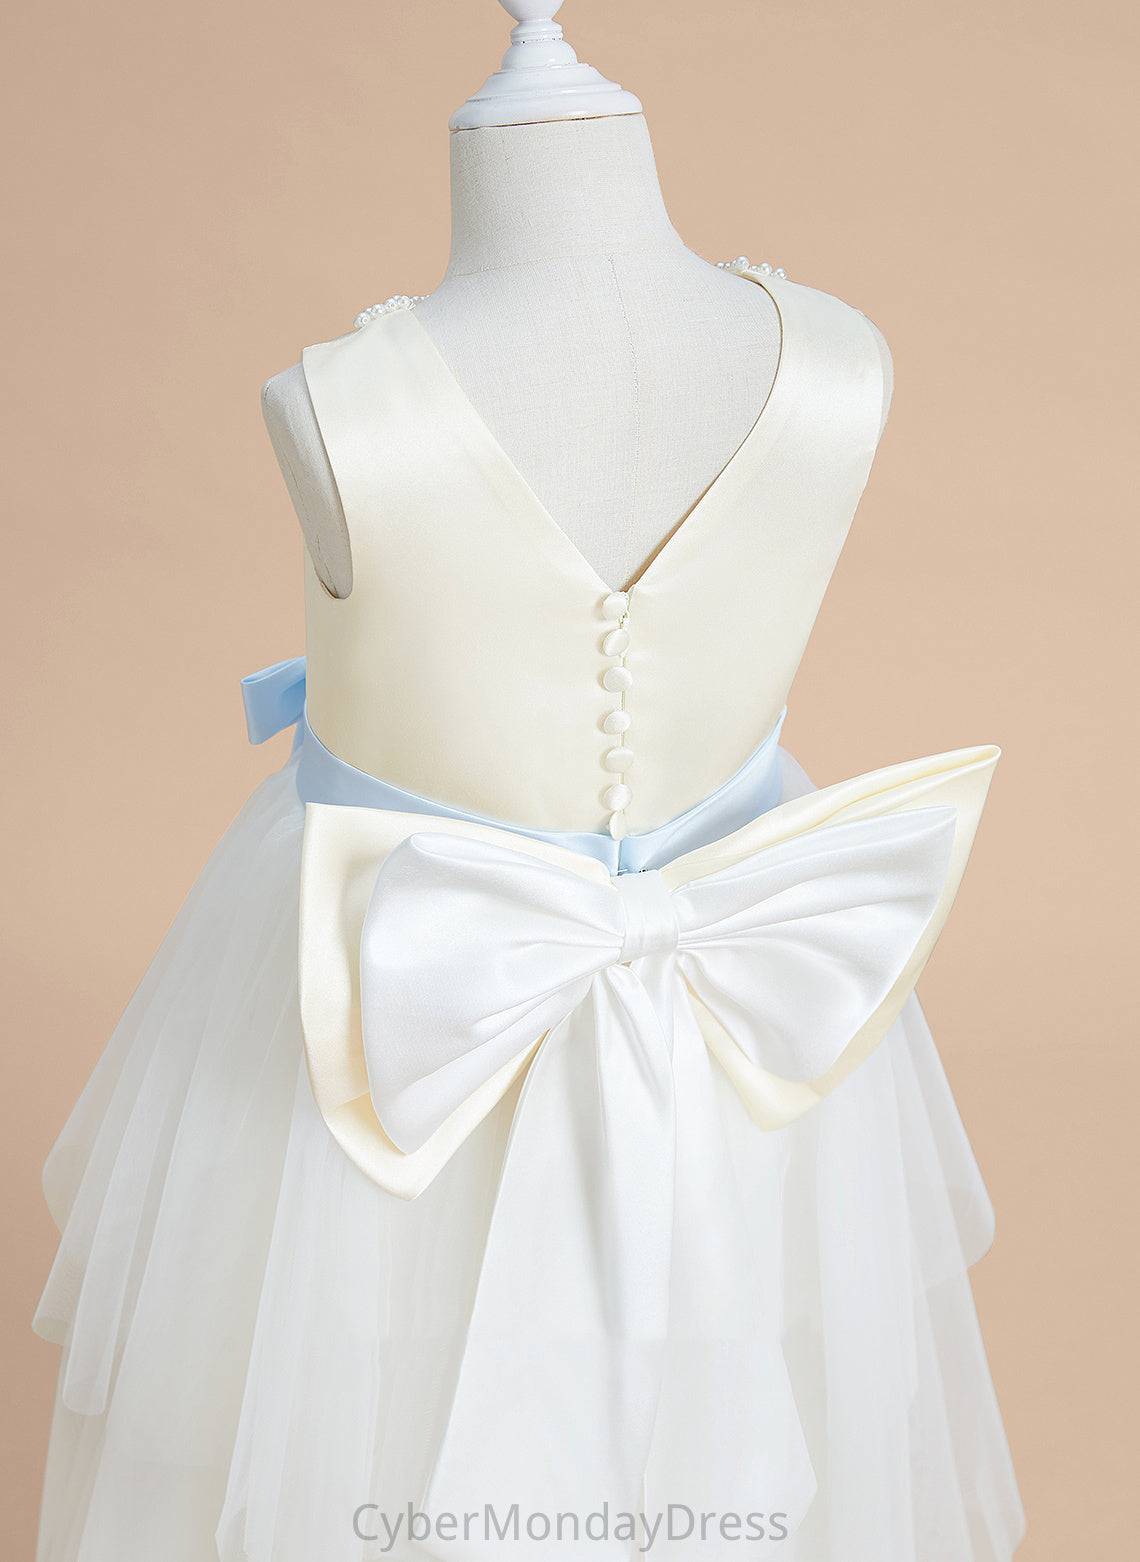 Satin/Tulle Scoop A-Line Sleeveless Dress Tea-length - Sash/Beading/Bow(s) Girl Flower Flower Girl Dresses Neck Mildred With